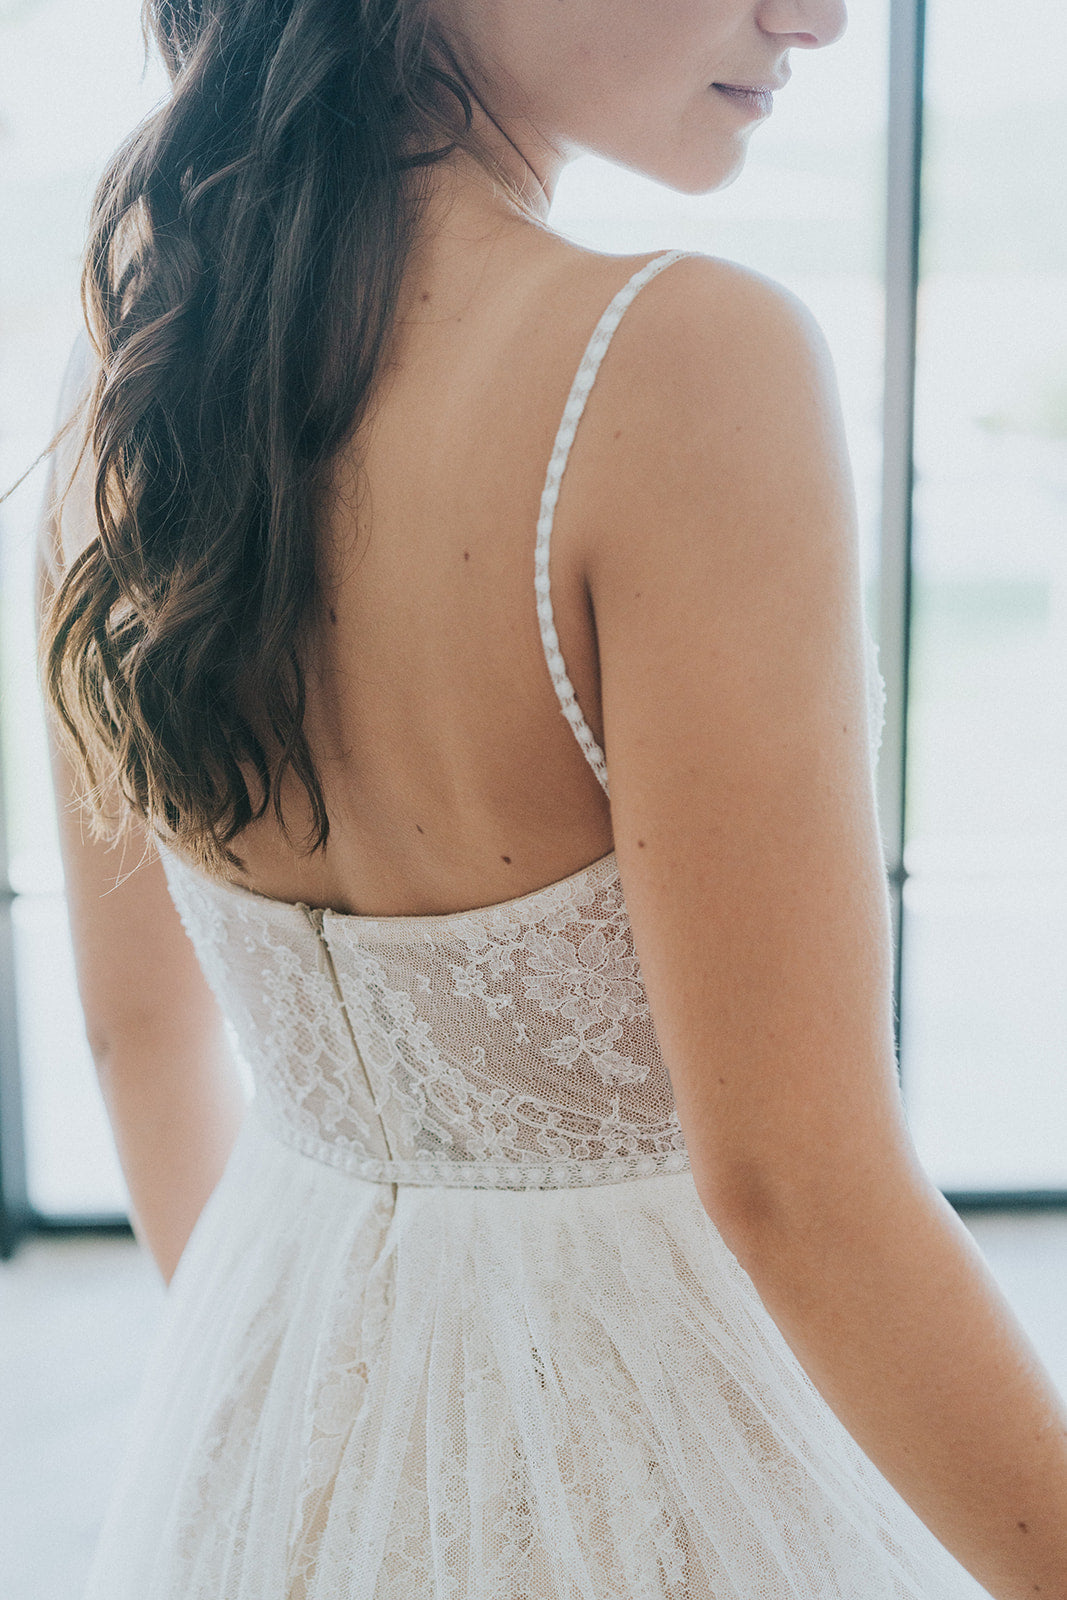 Tailor-made wedding dress - Azure